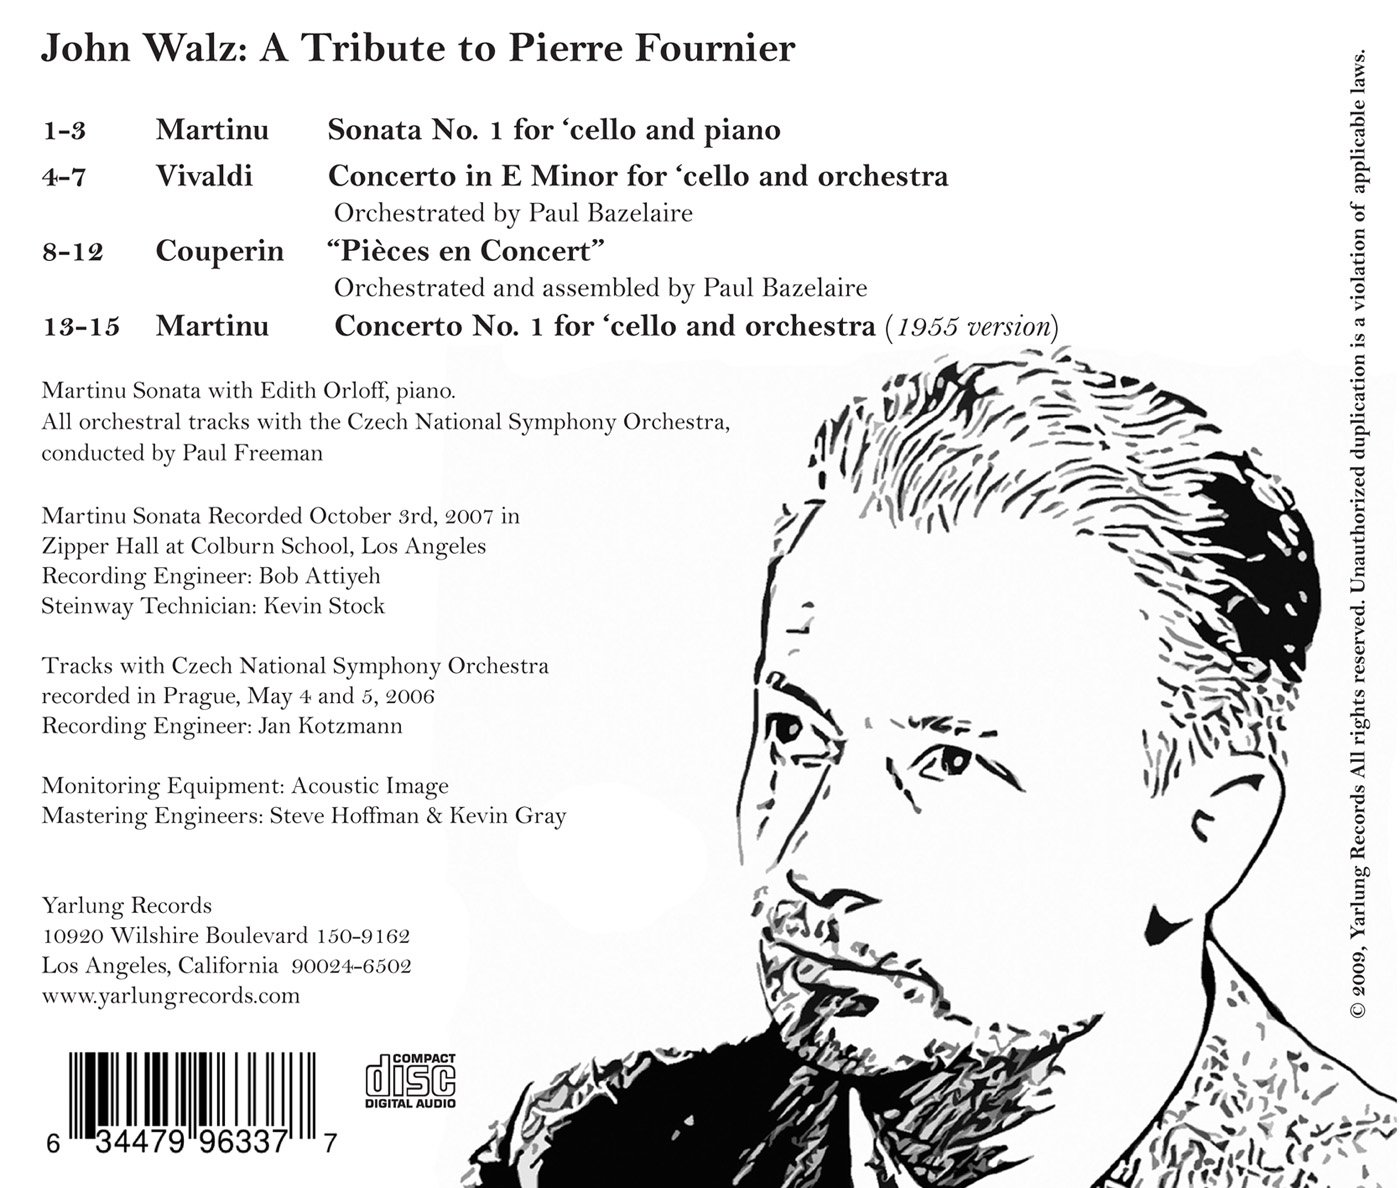 John Walz 마르티누: 첼로 협주곡 1번, 첼로 소나타 1번 / 비발디: 첼로 협주곡 마단조 (Martinu: Cello Concerto H.196, Cello Sonata H. 277 / Vivaldi: Cello Concerto RV40) 